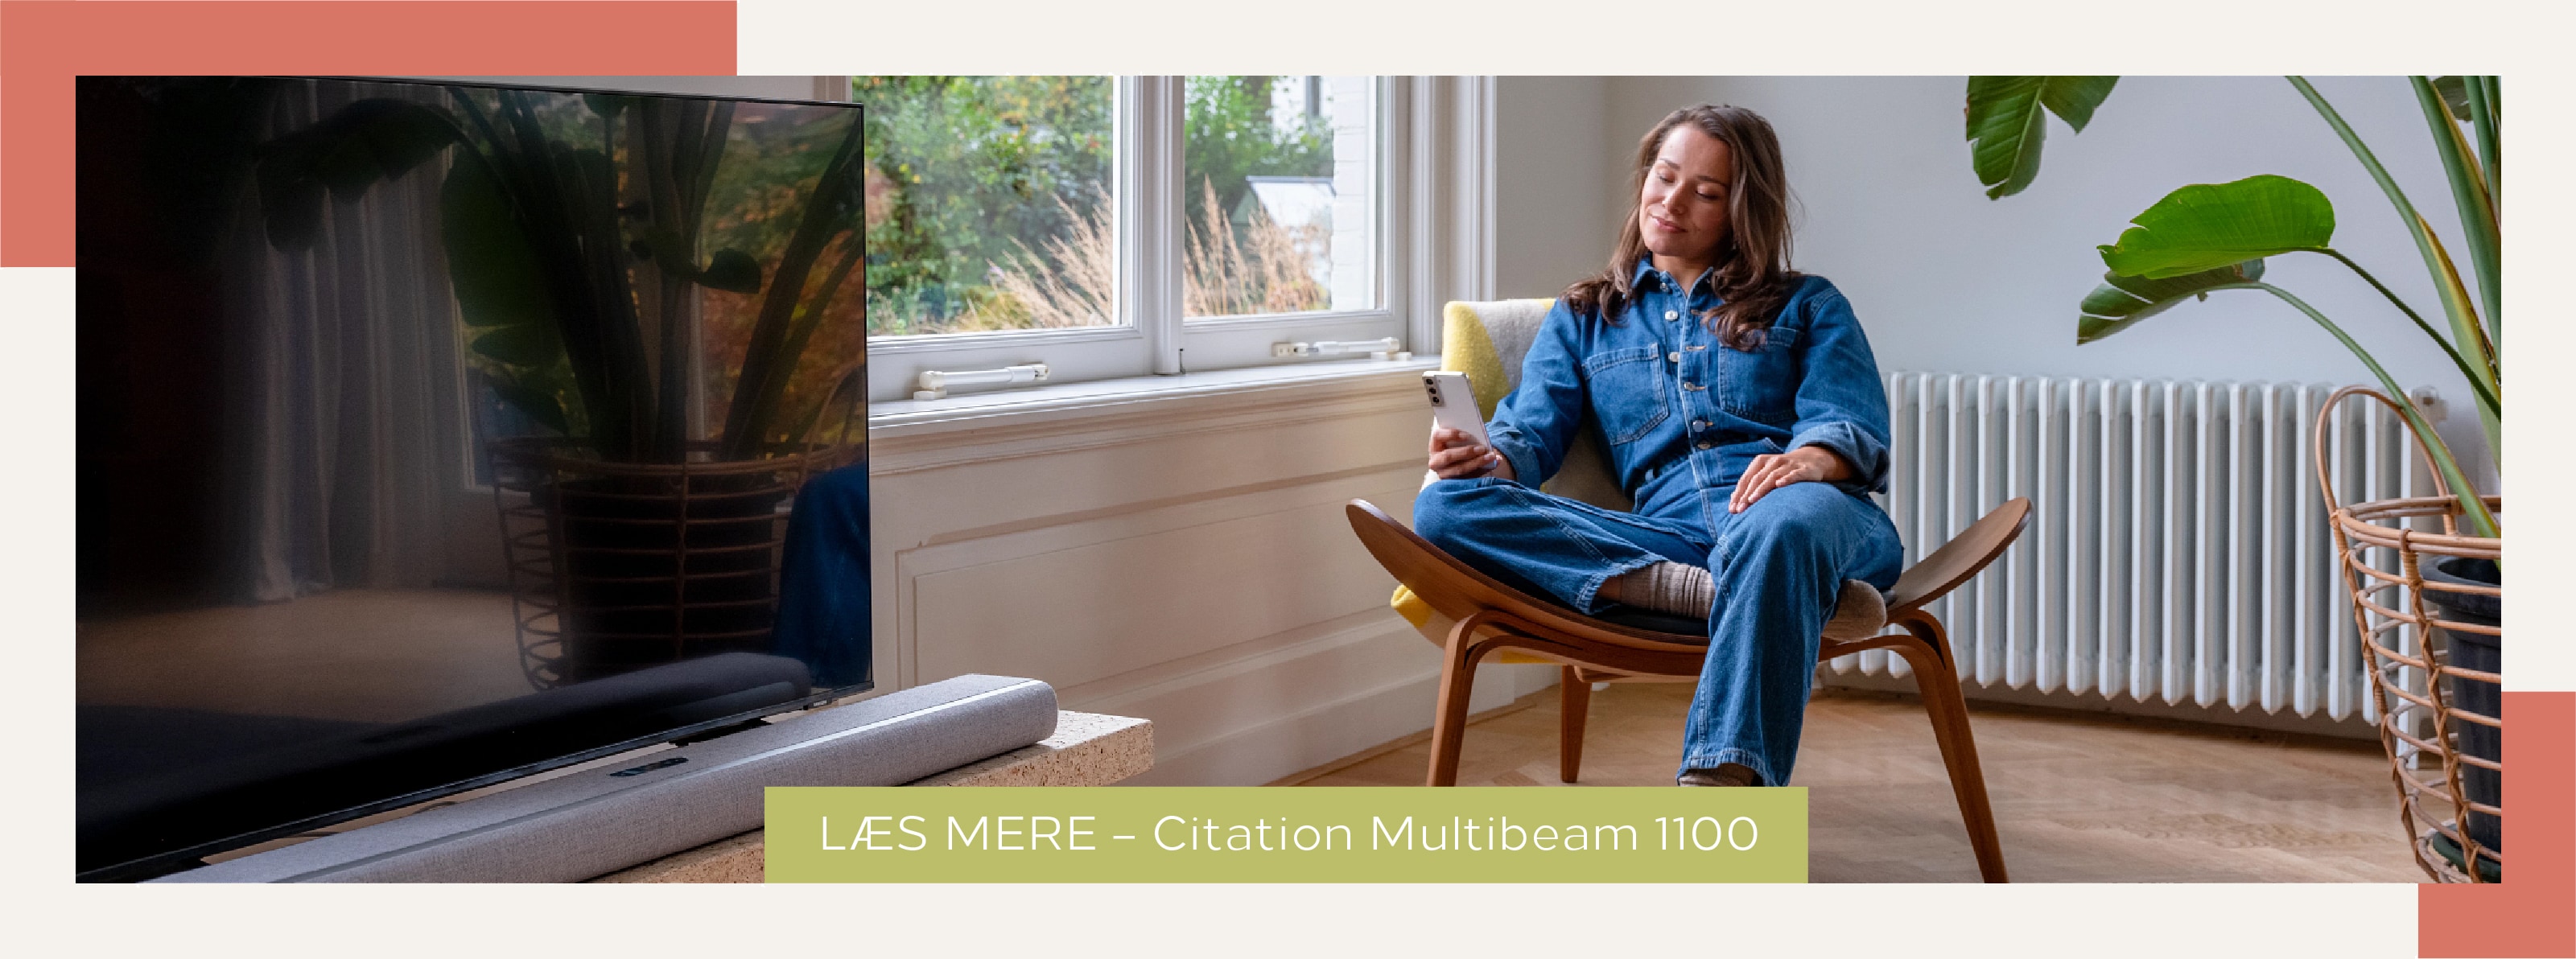 Kvinde der sidder i en stue ved siden af et TV og Harman Kardon Citation Multibeam 1100